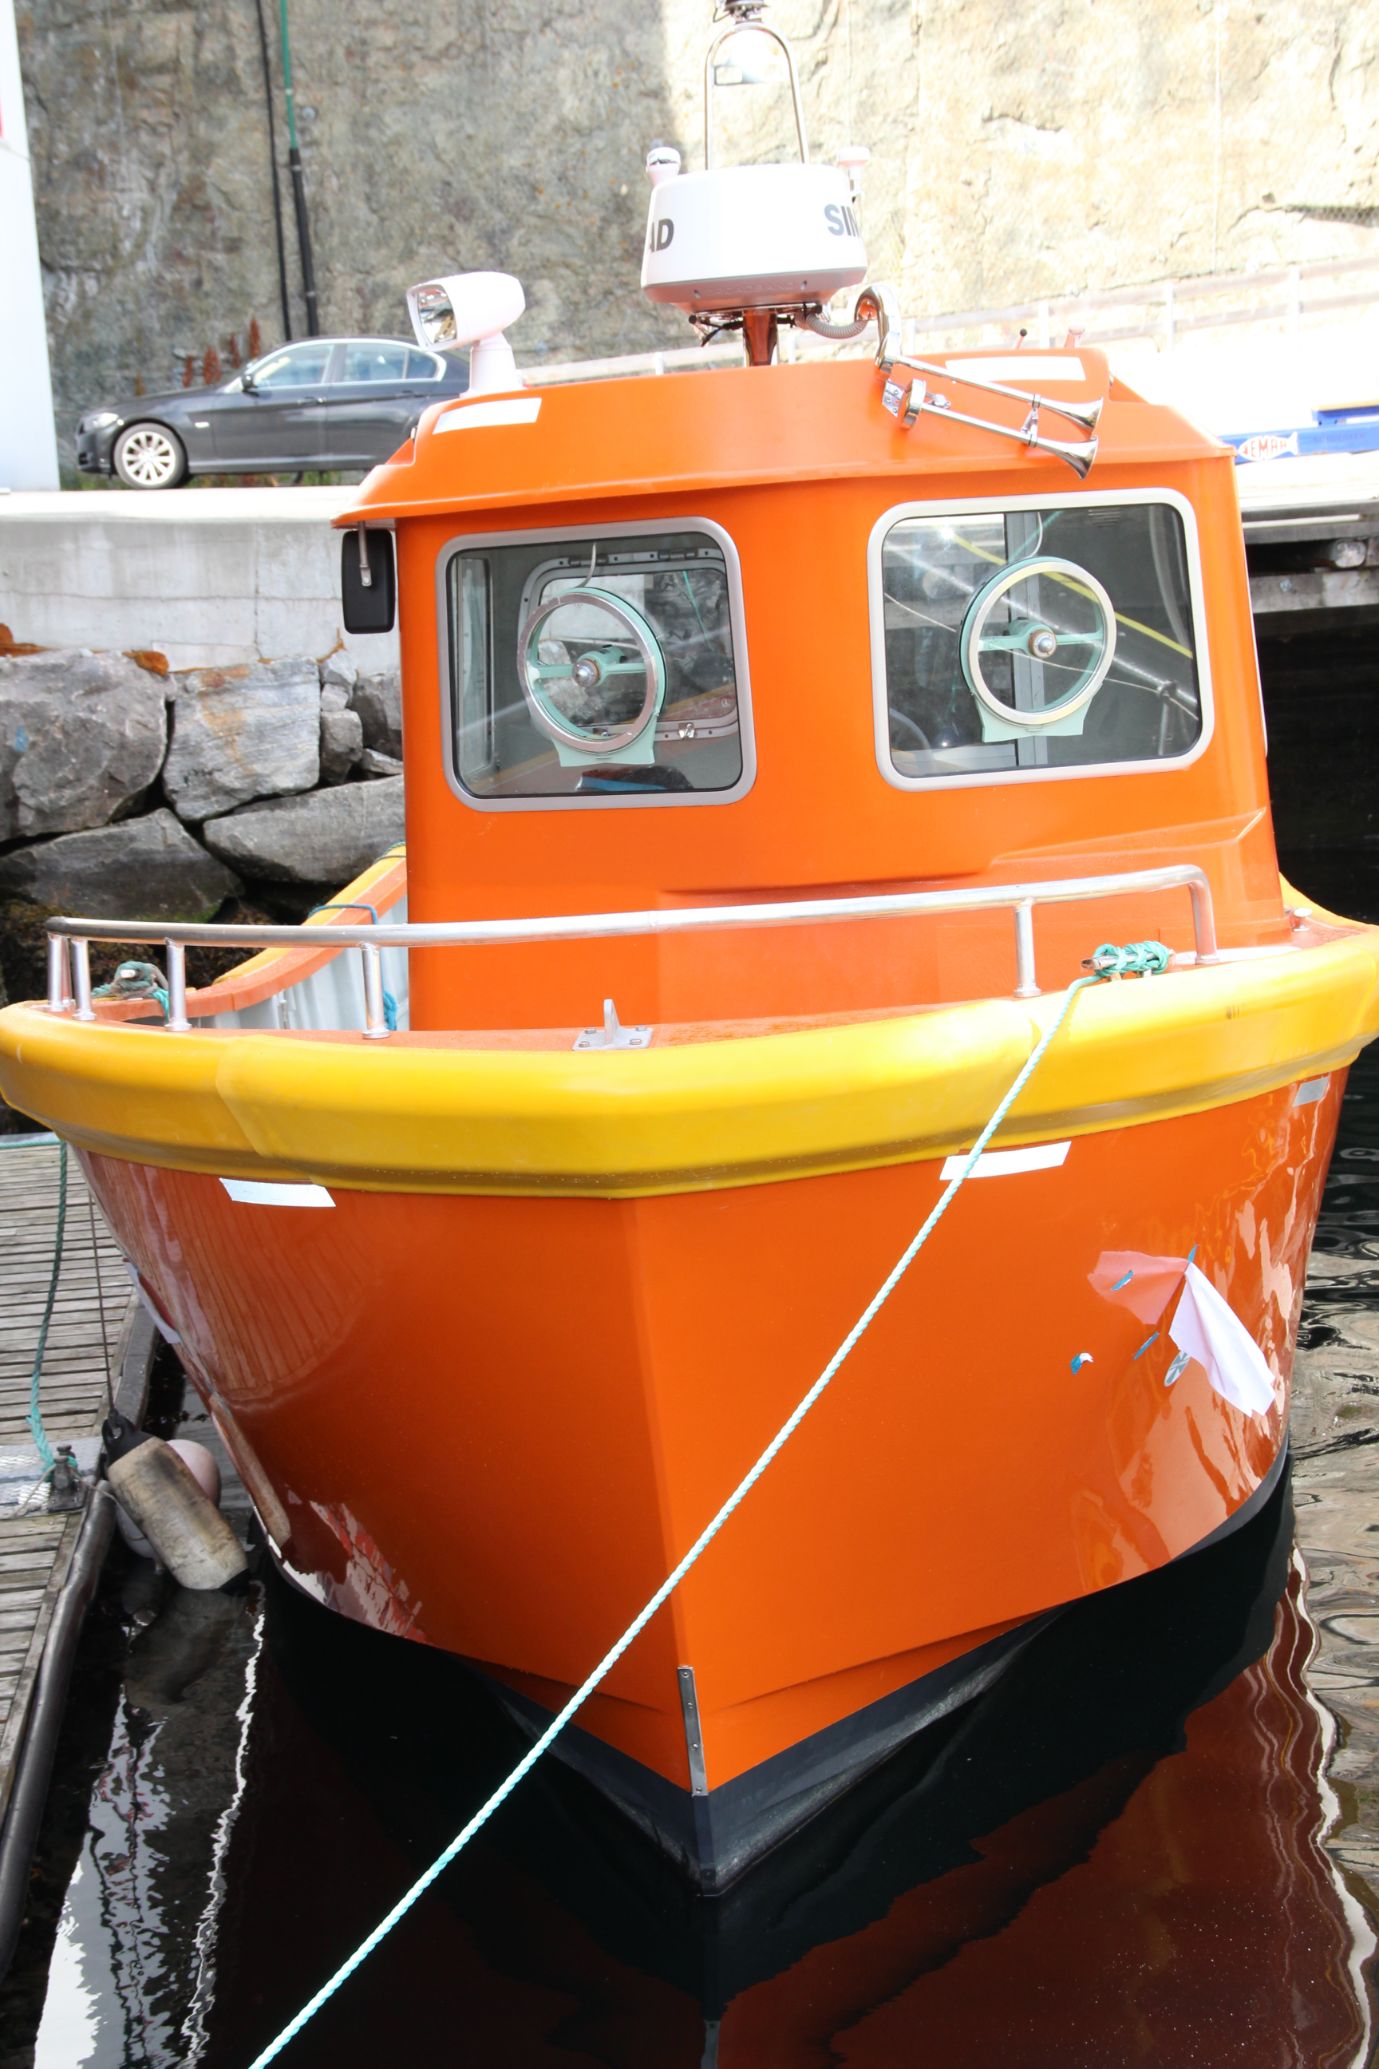 Orange båt ligger fortøyd ved kai